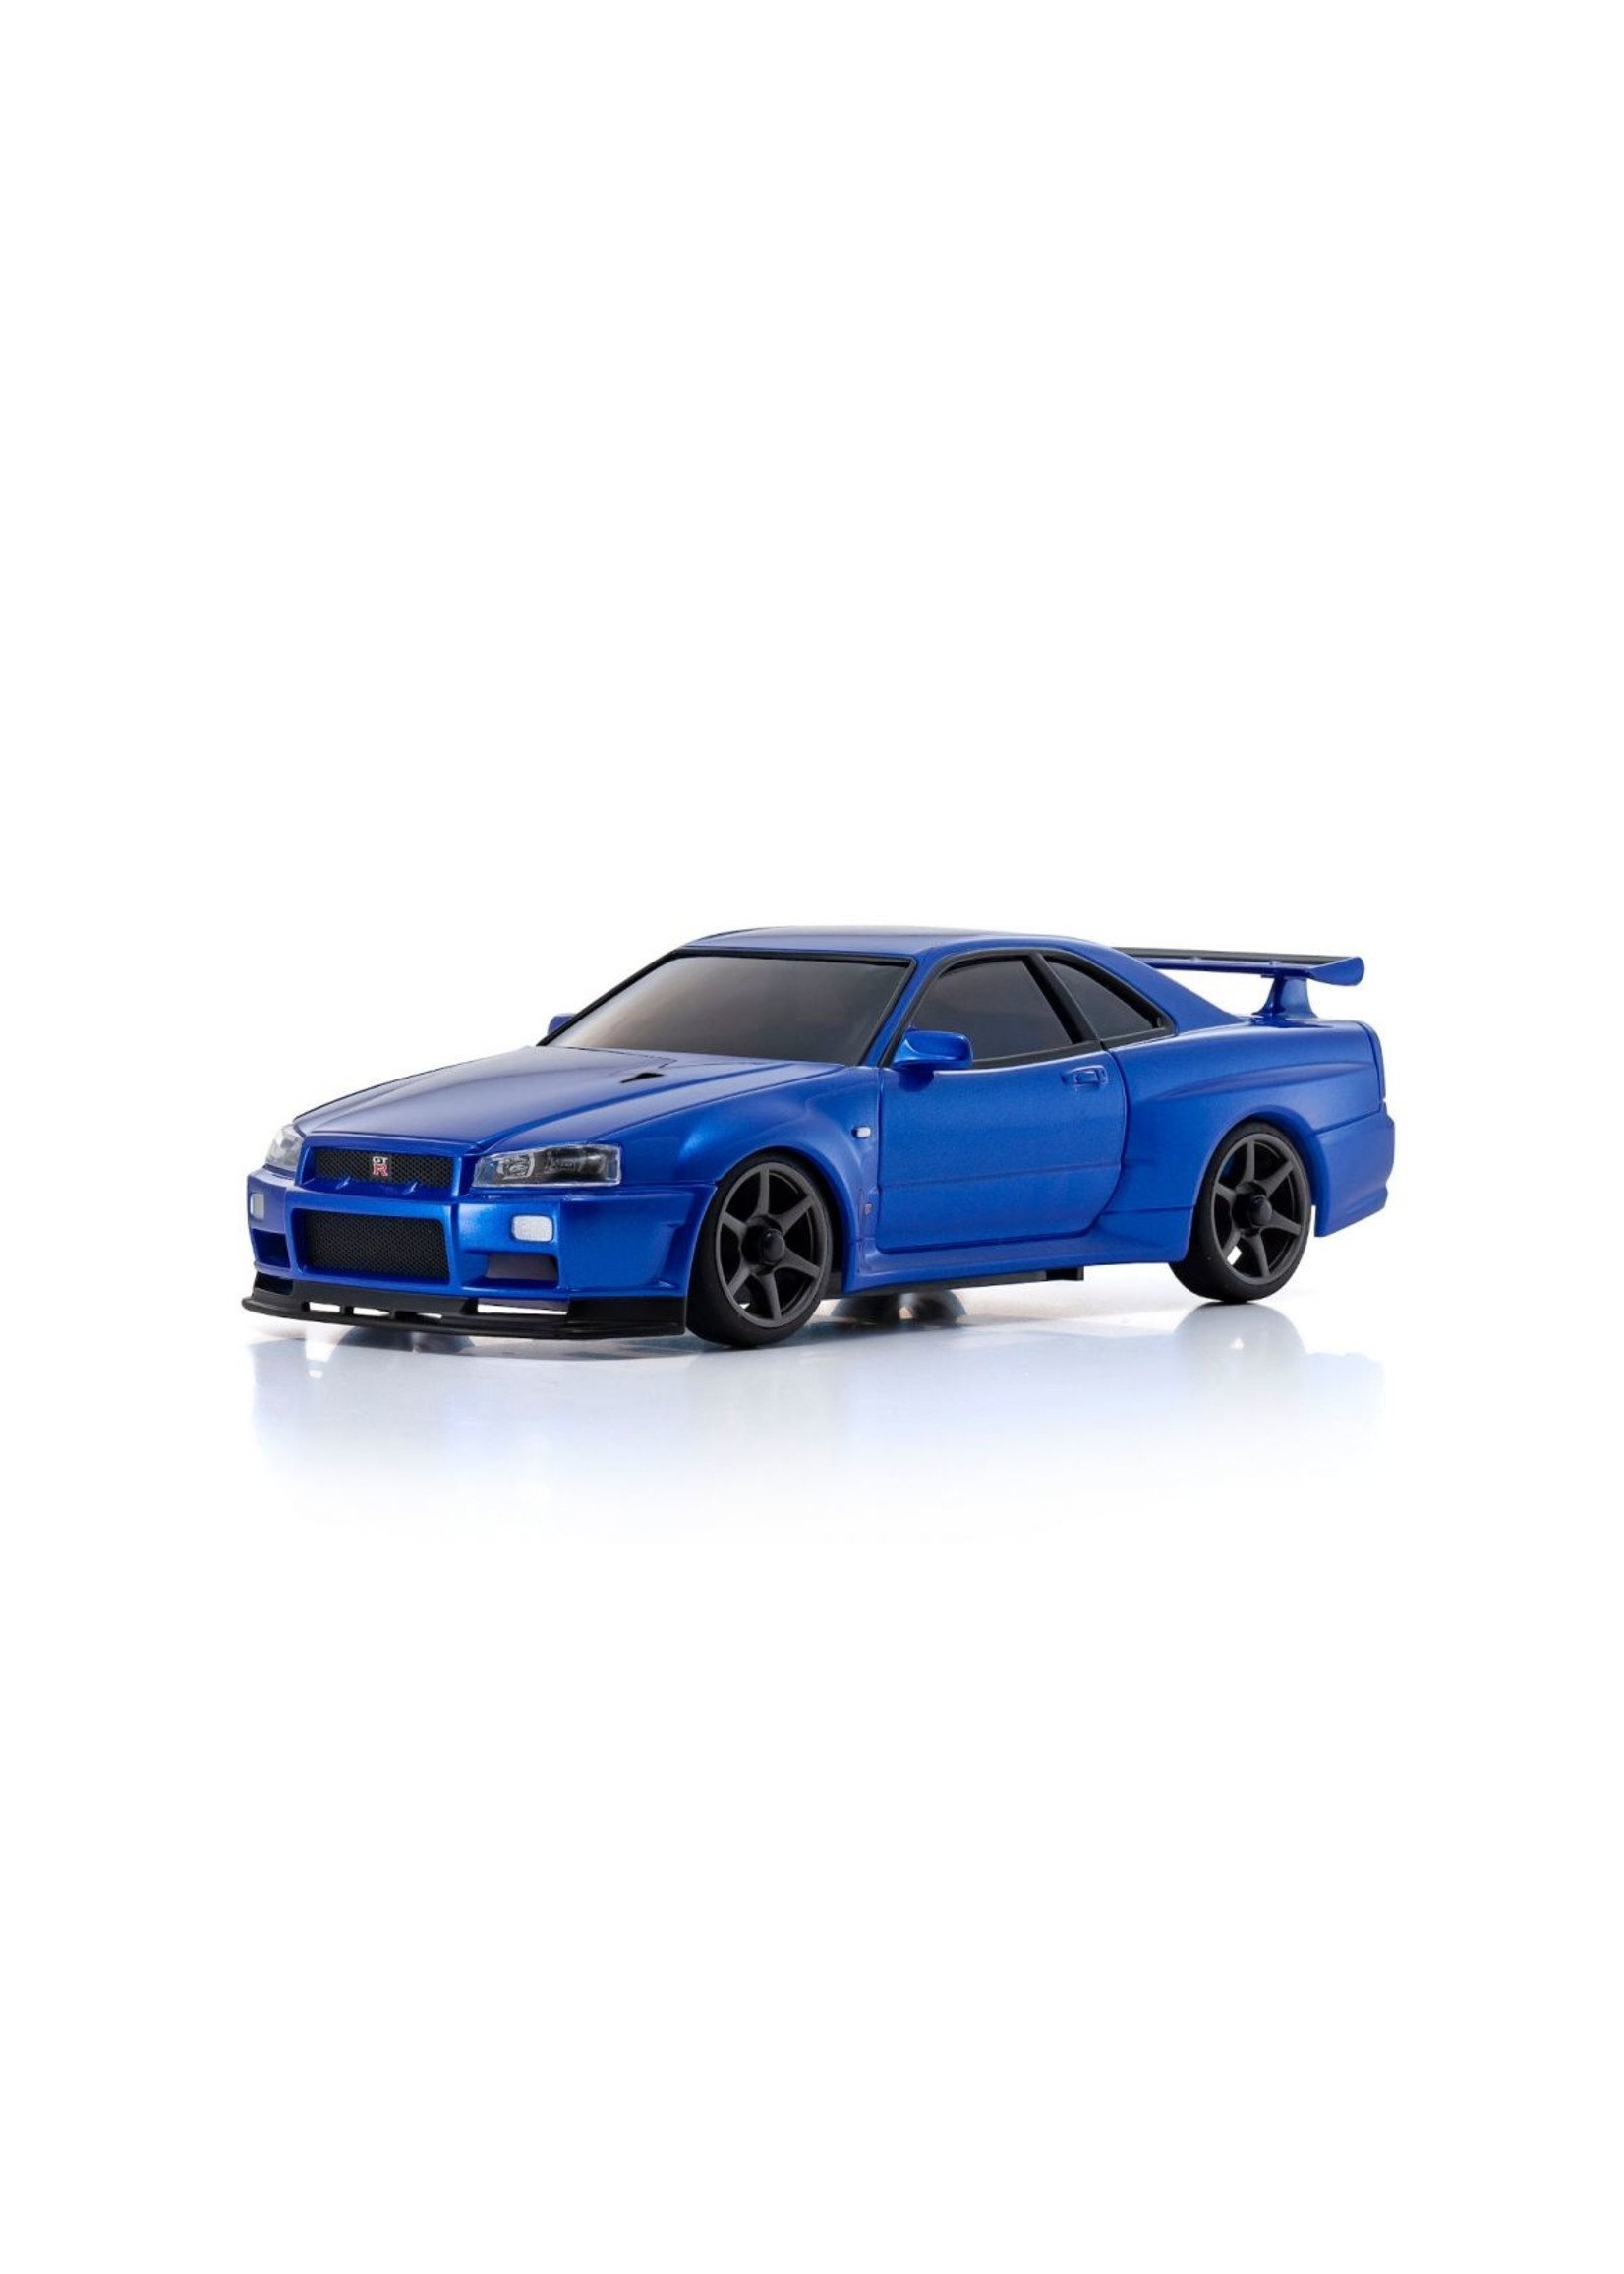 Kyosho MINI-Z AWD Skyline GT-R V.spec II Nur (R34), Metallic Blue - Readyset